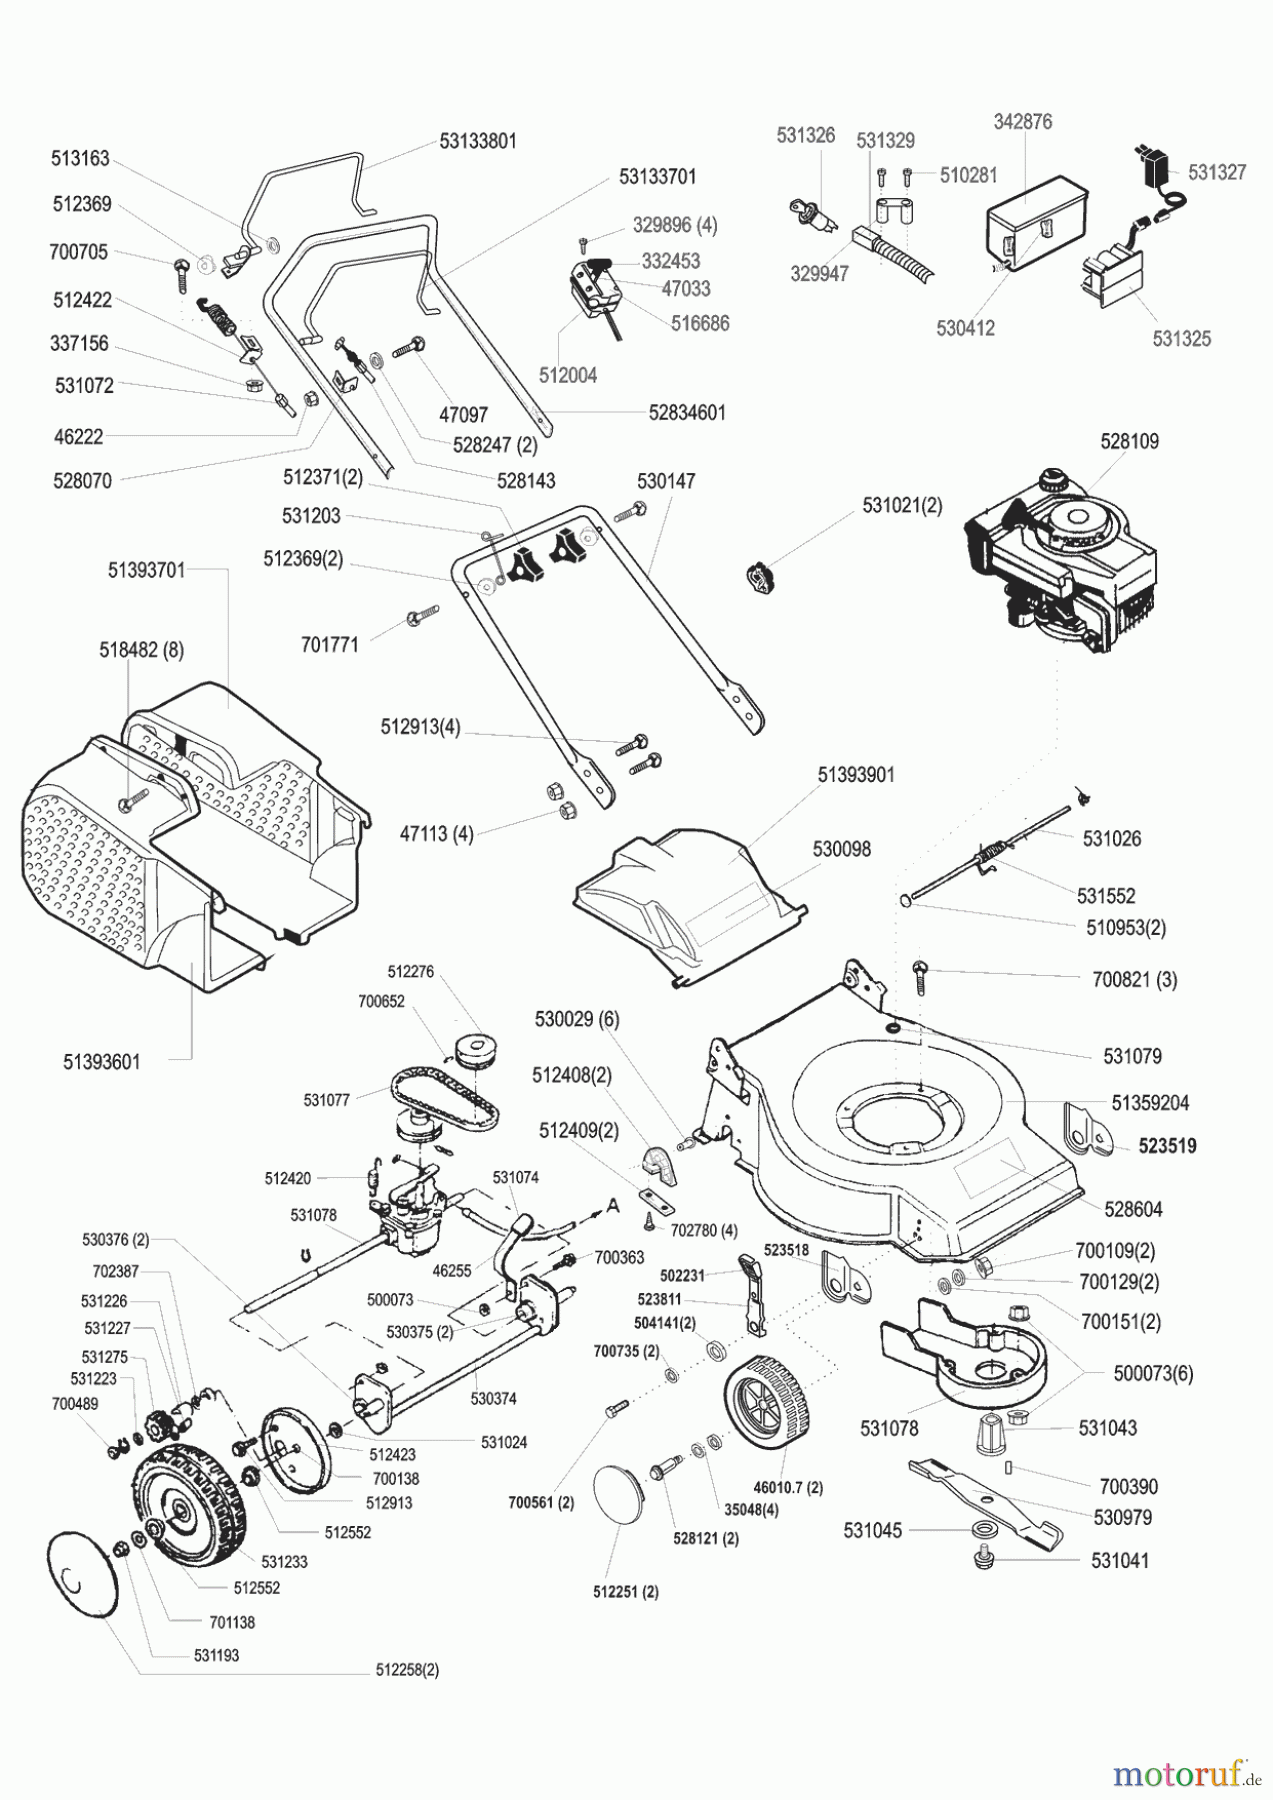  Ginge Gartentechnik Benzinrasenmäher 46 Auto BS4  03/1998 Seite 1